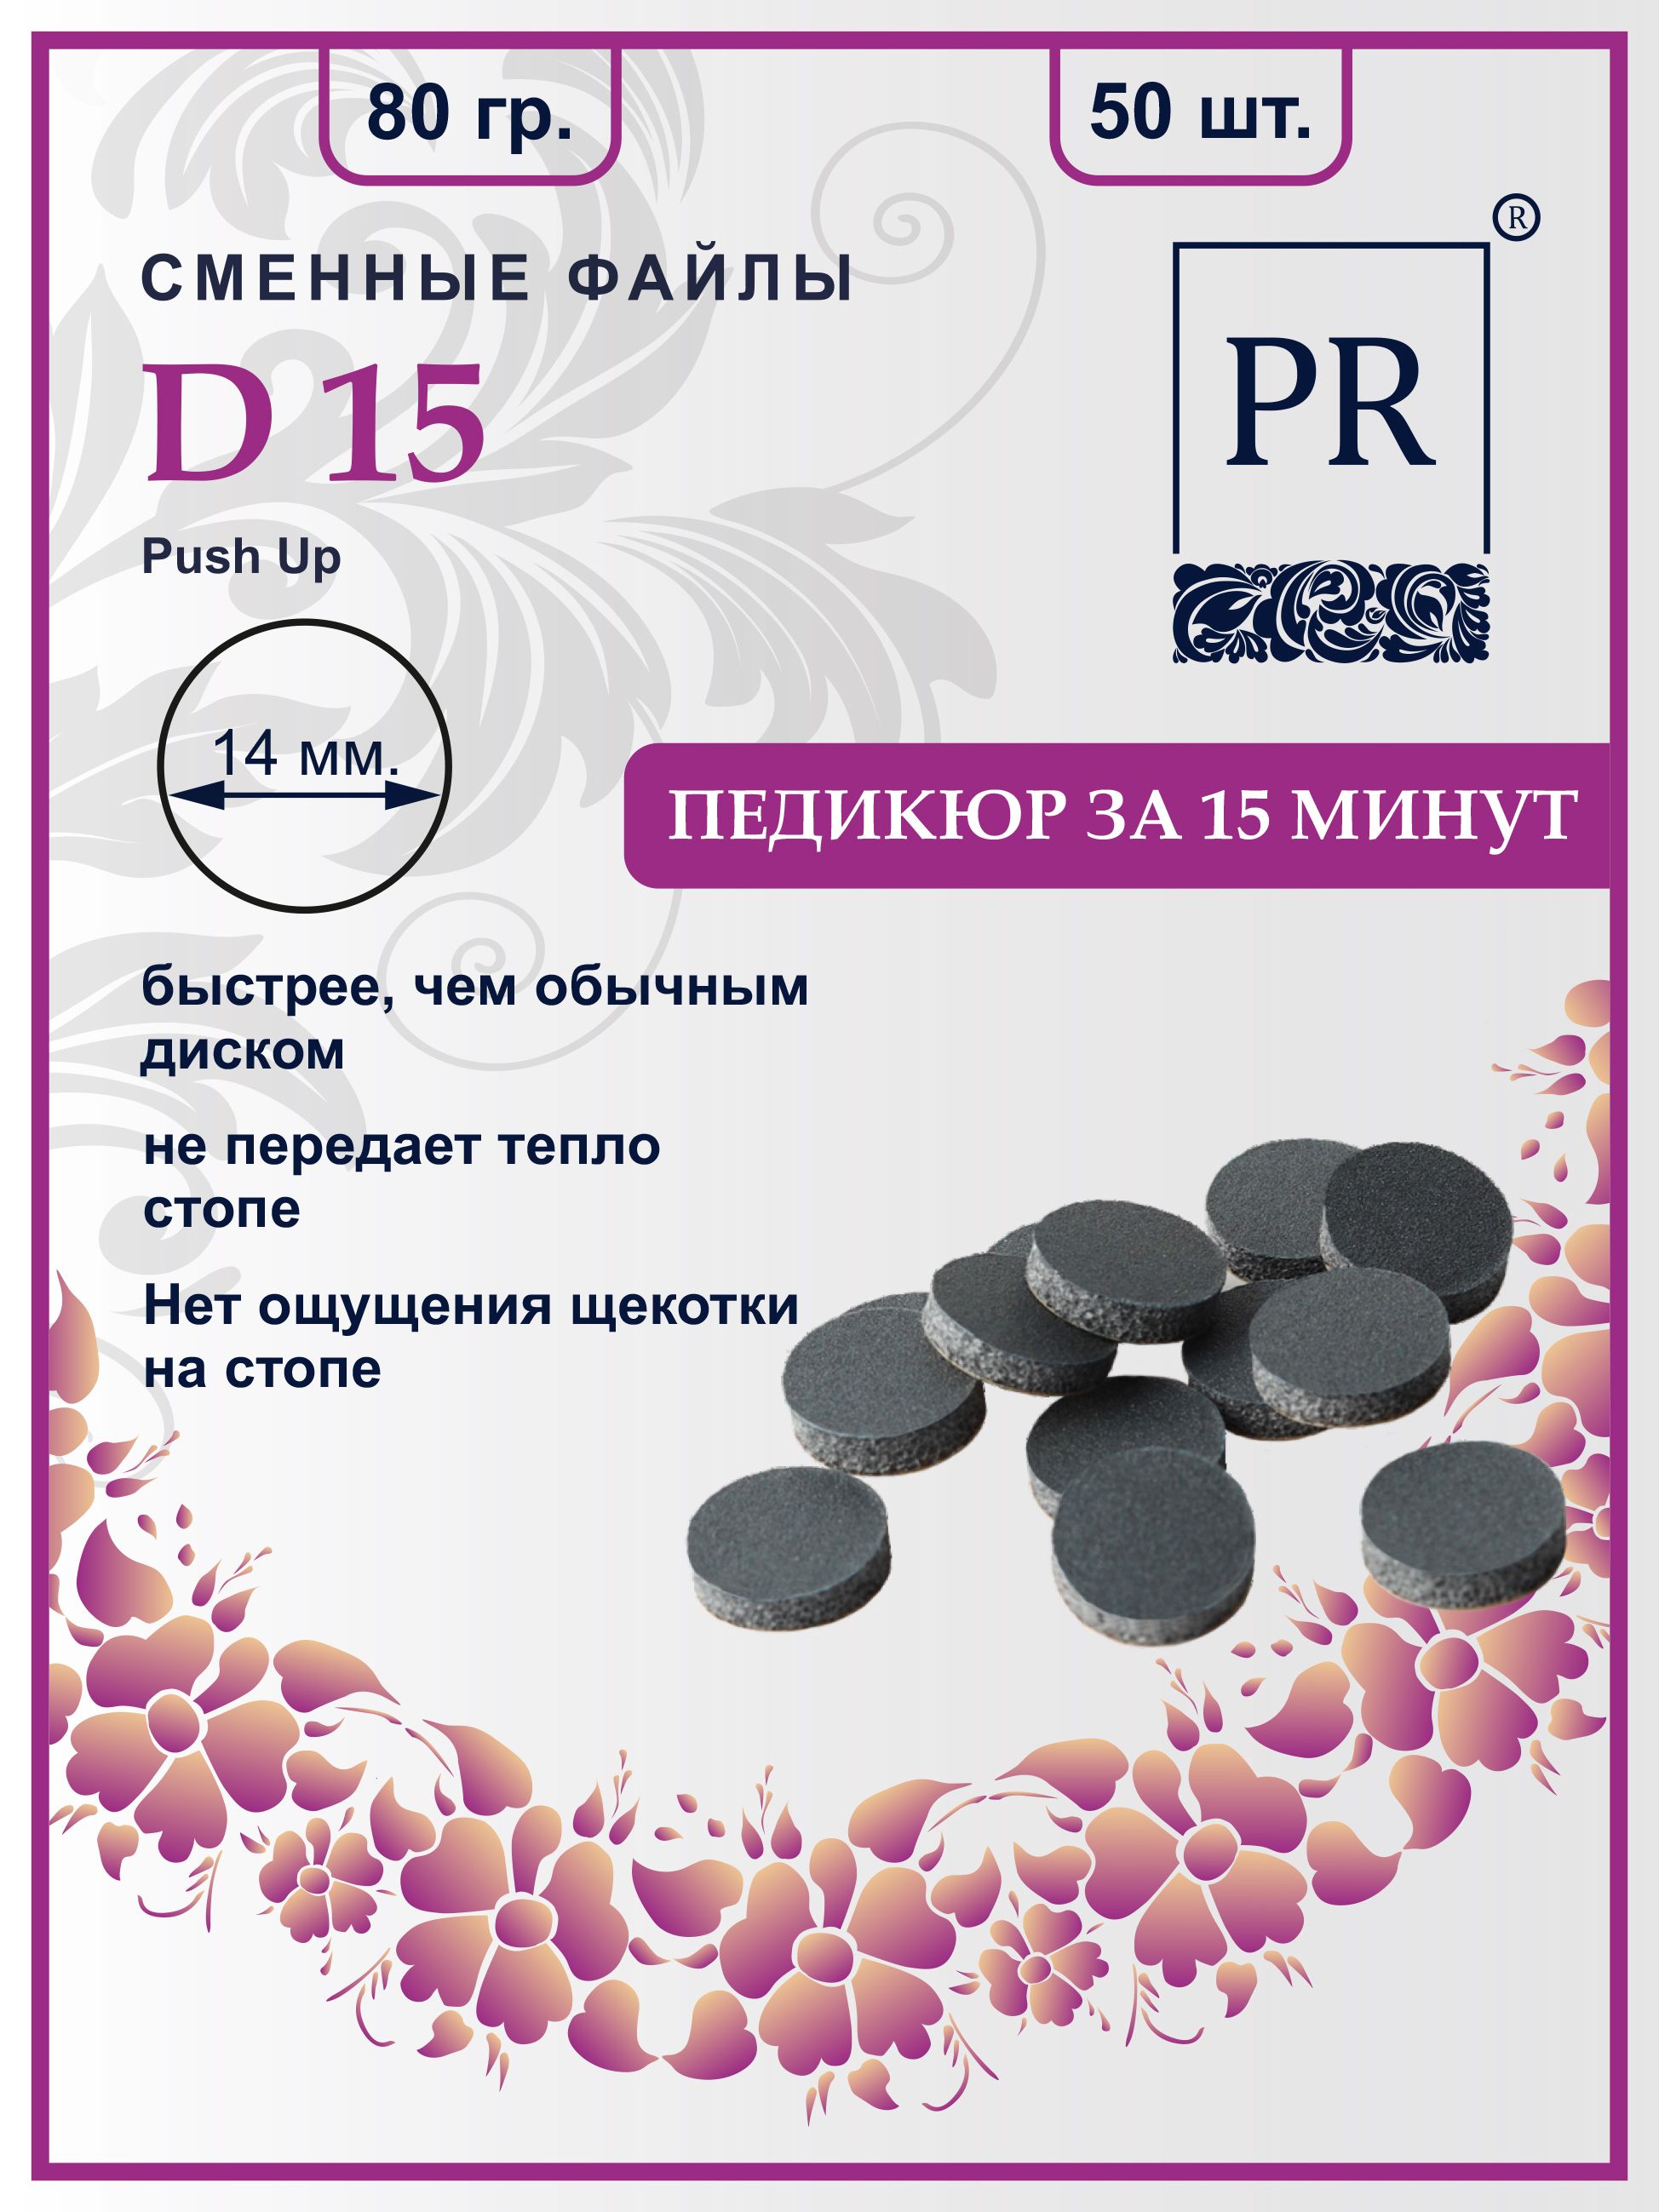 Сменные файлы Pilochki Russia диски Push Up для педикюра для диска S 80 грит 50 штук